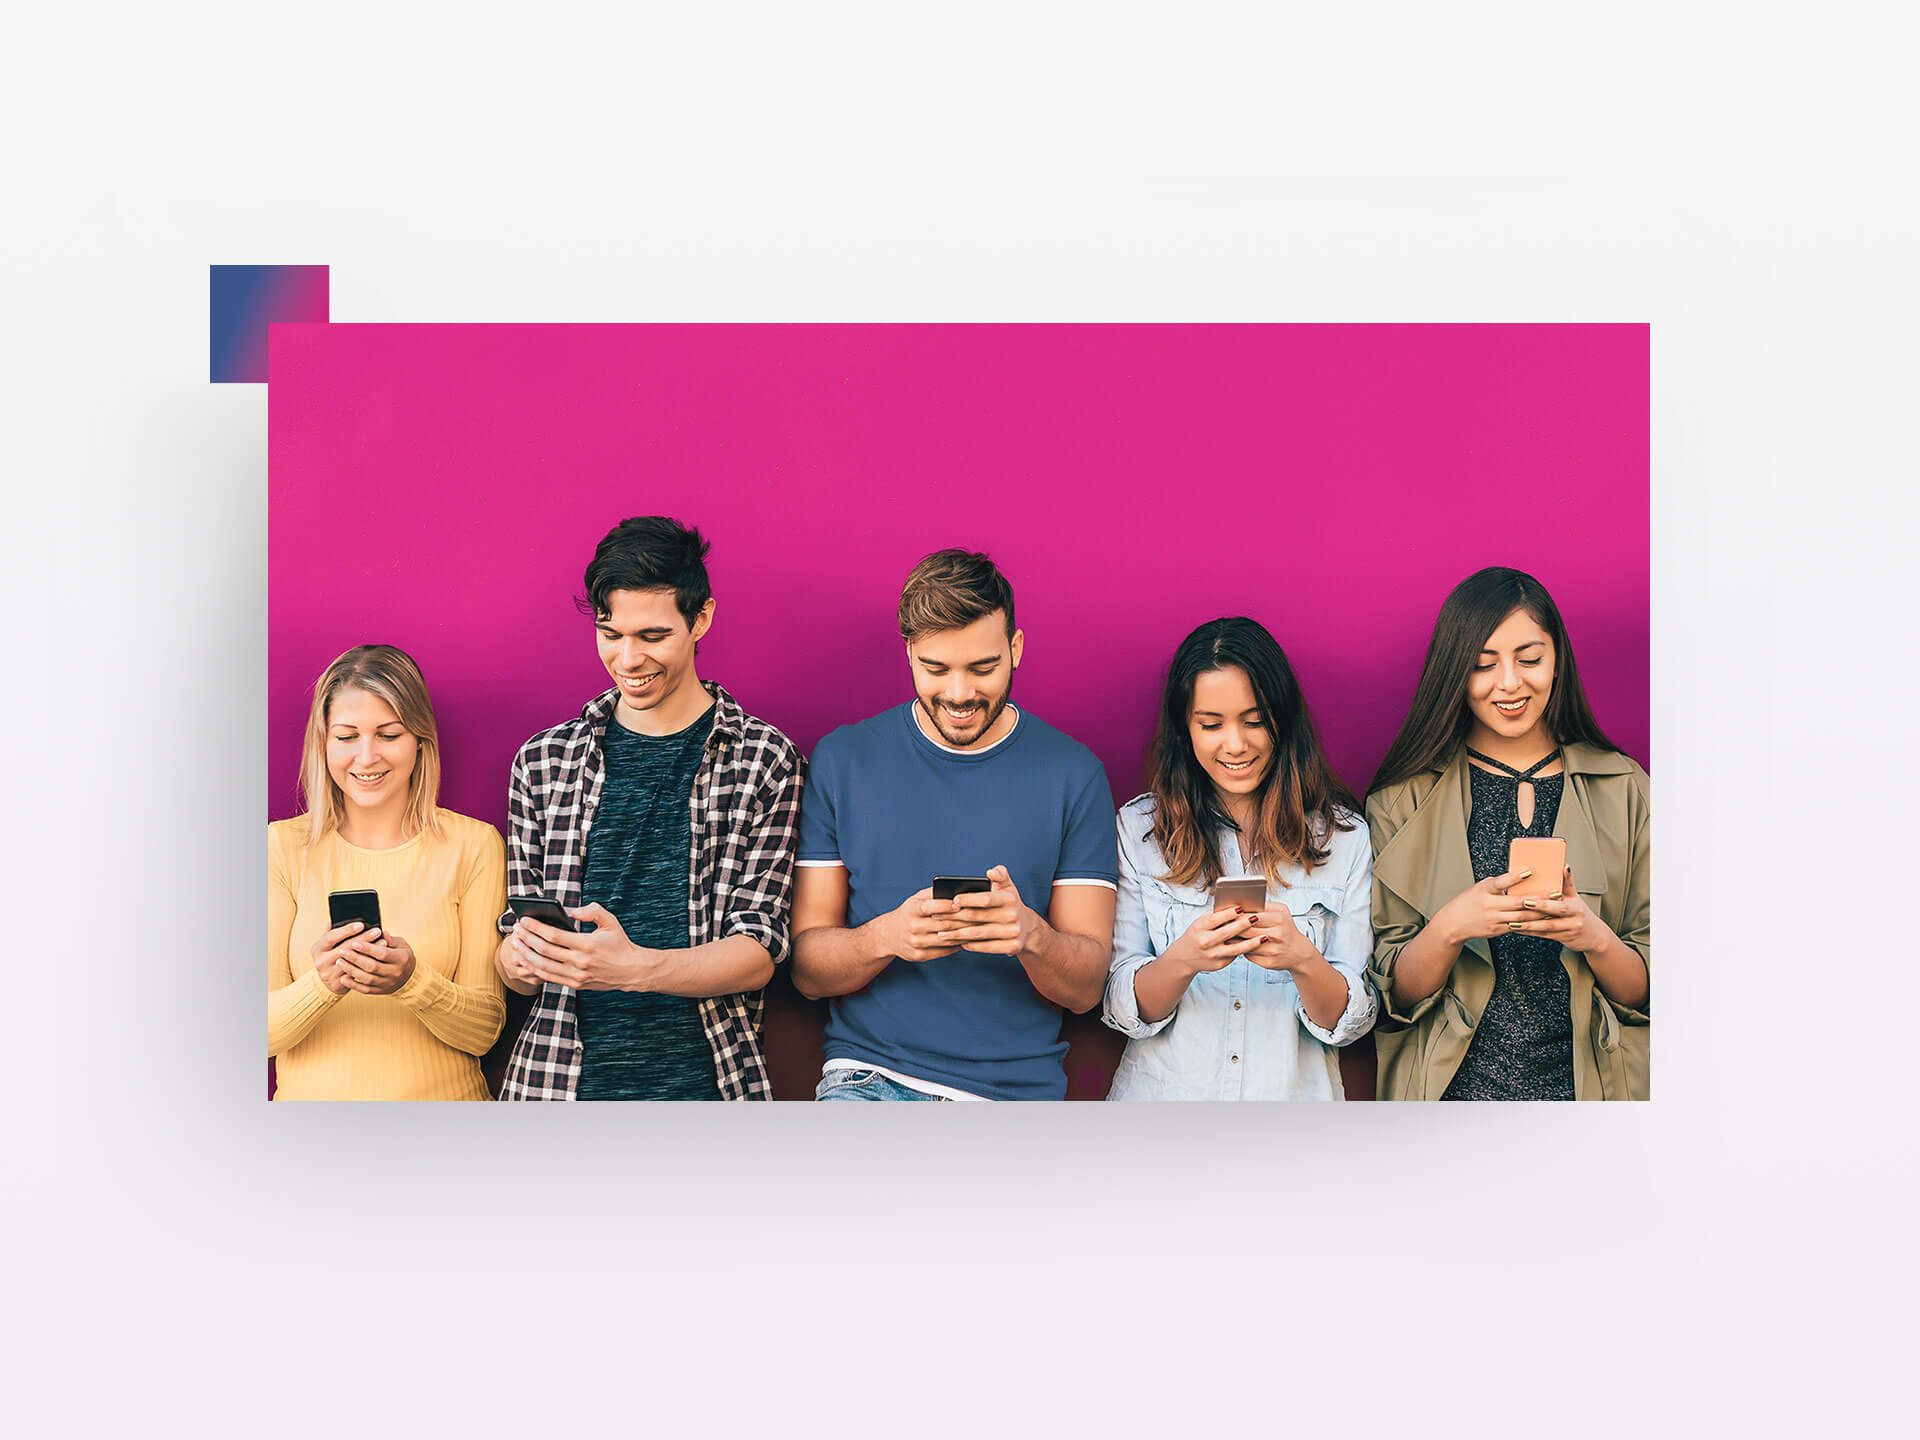 5 Personen lehnen a pinkfarbener Wand mit mobile Device in der Hand